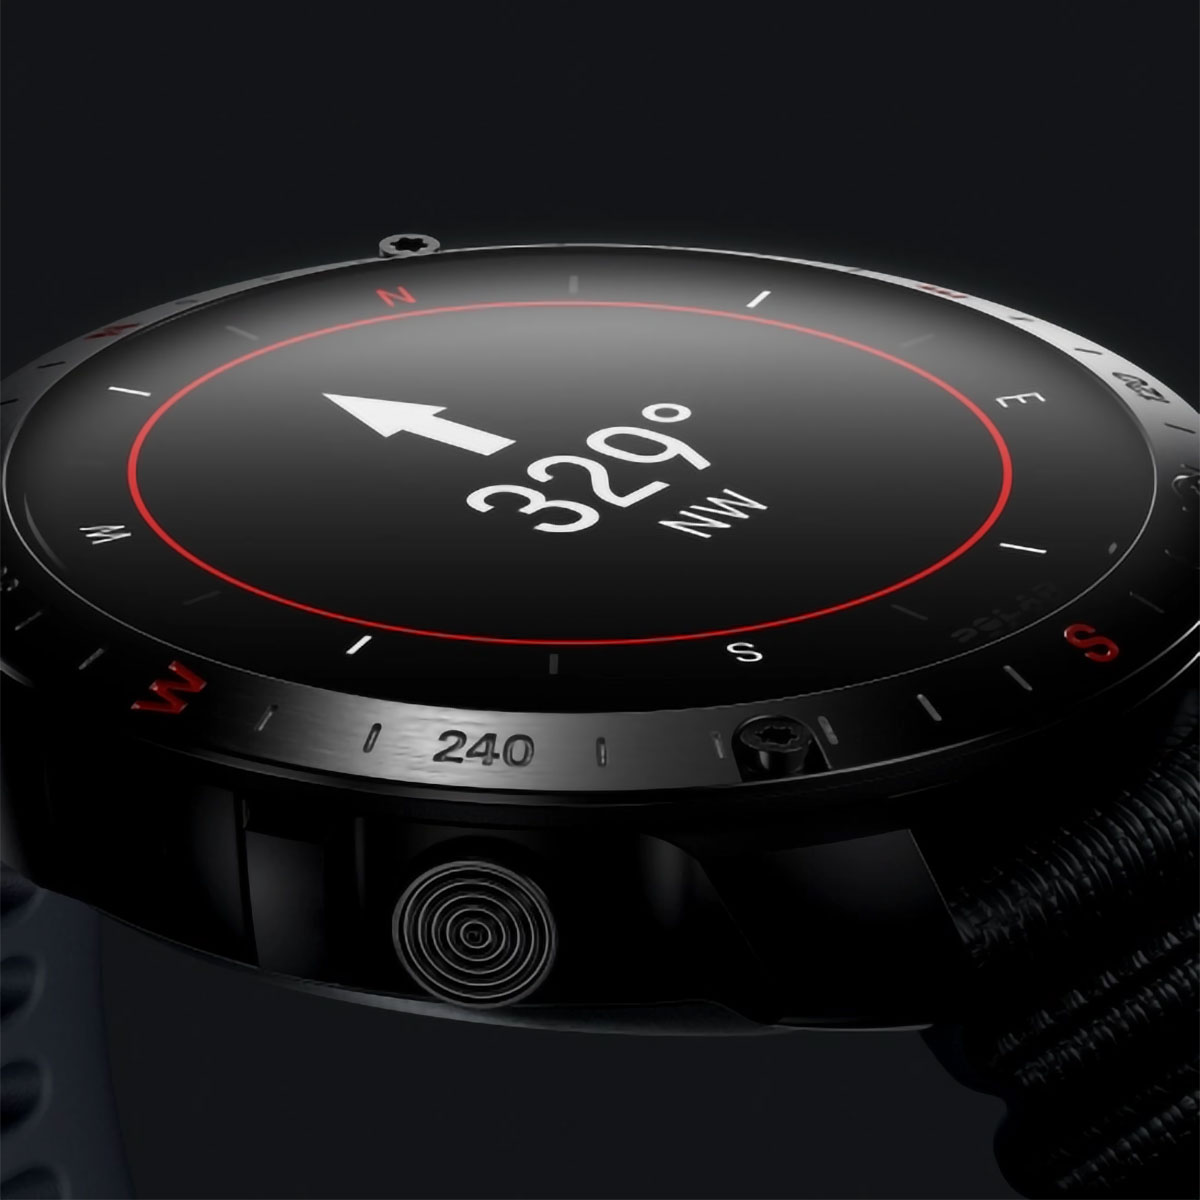 Polar Grit X2 Pro, llega el smartwatch más resistente de la marca hasta la fecha y diseñado para practicar cualquier deporte